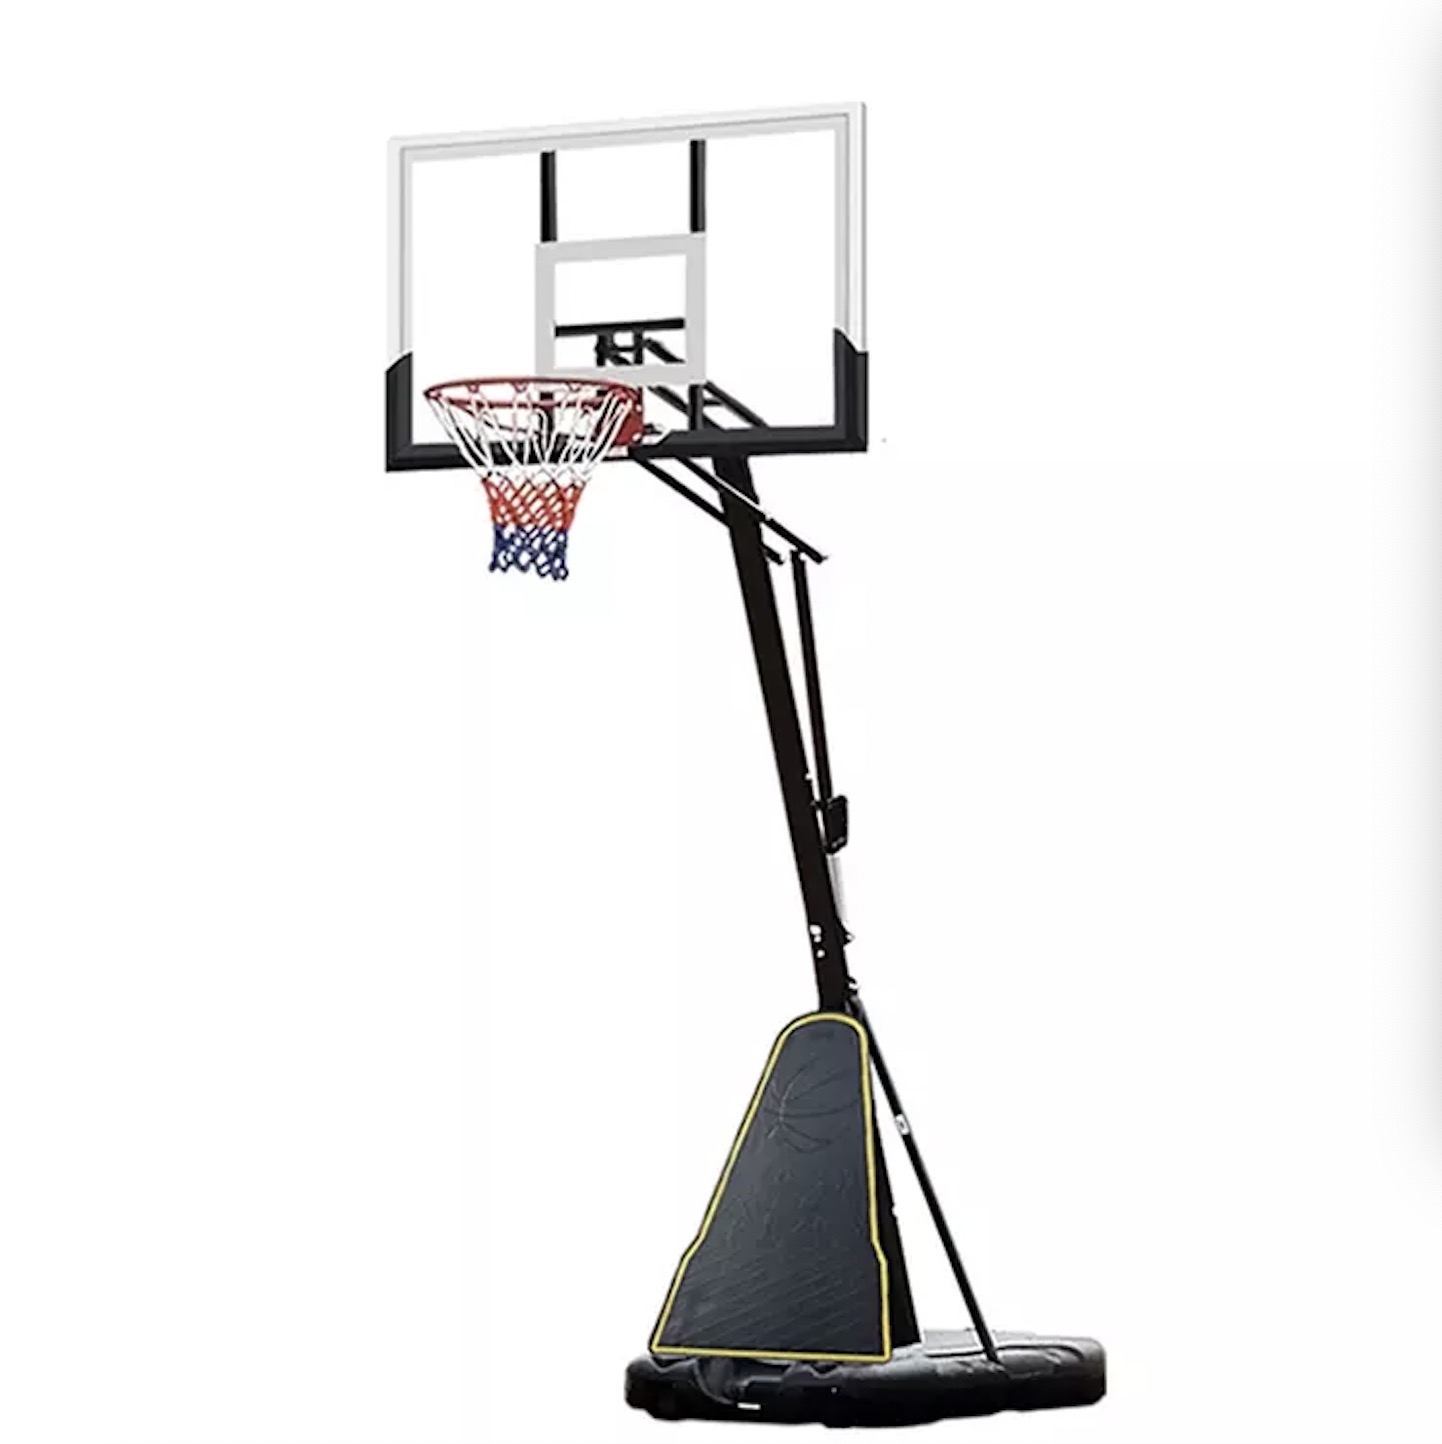 54 дюймдук такта Температураланган айнек Данк баскетбол алкагы Баскетбол стенд 5v5 мелдеш Көчө баскетболу Сыртта кыймылдуу